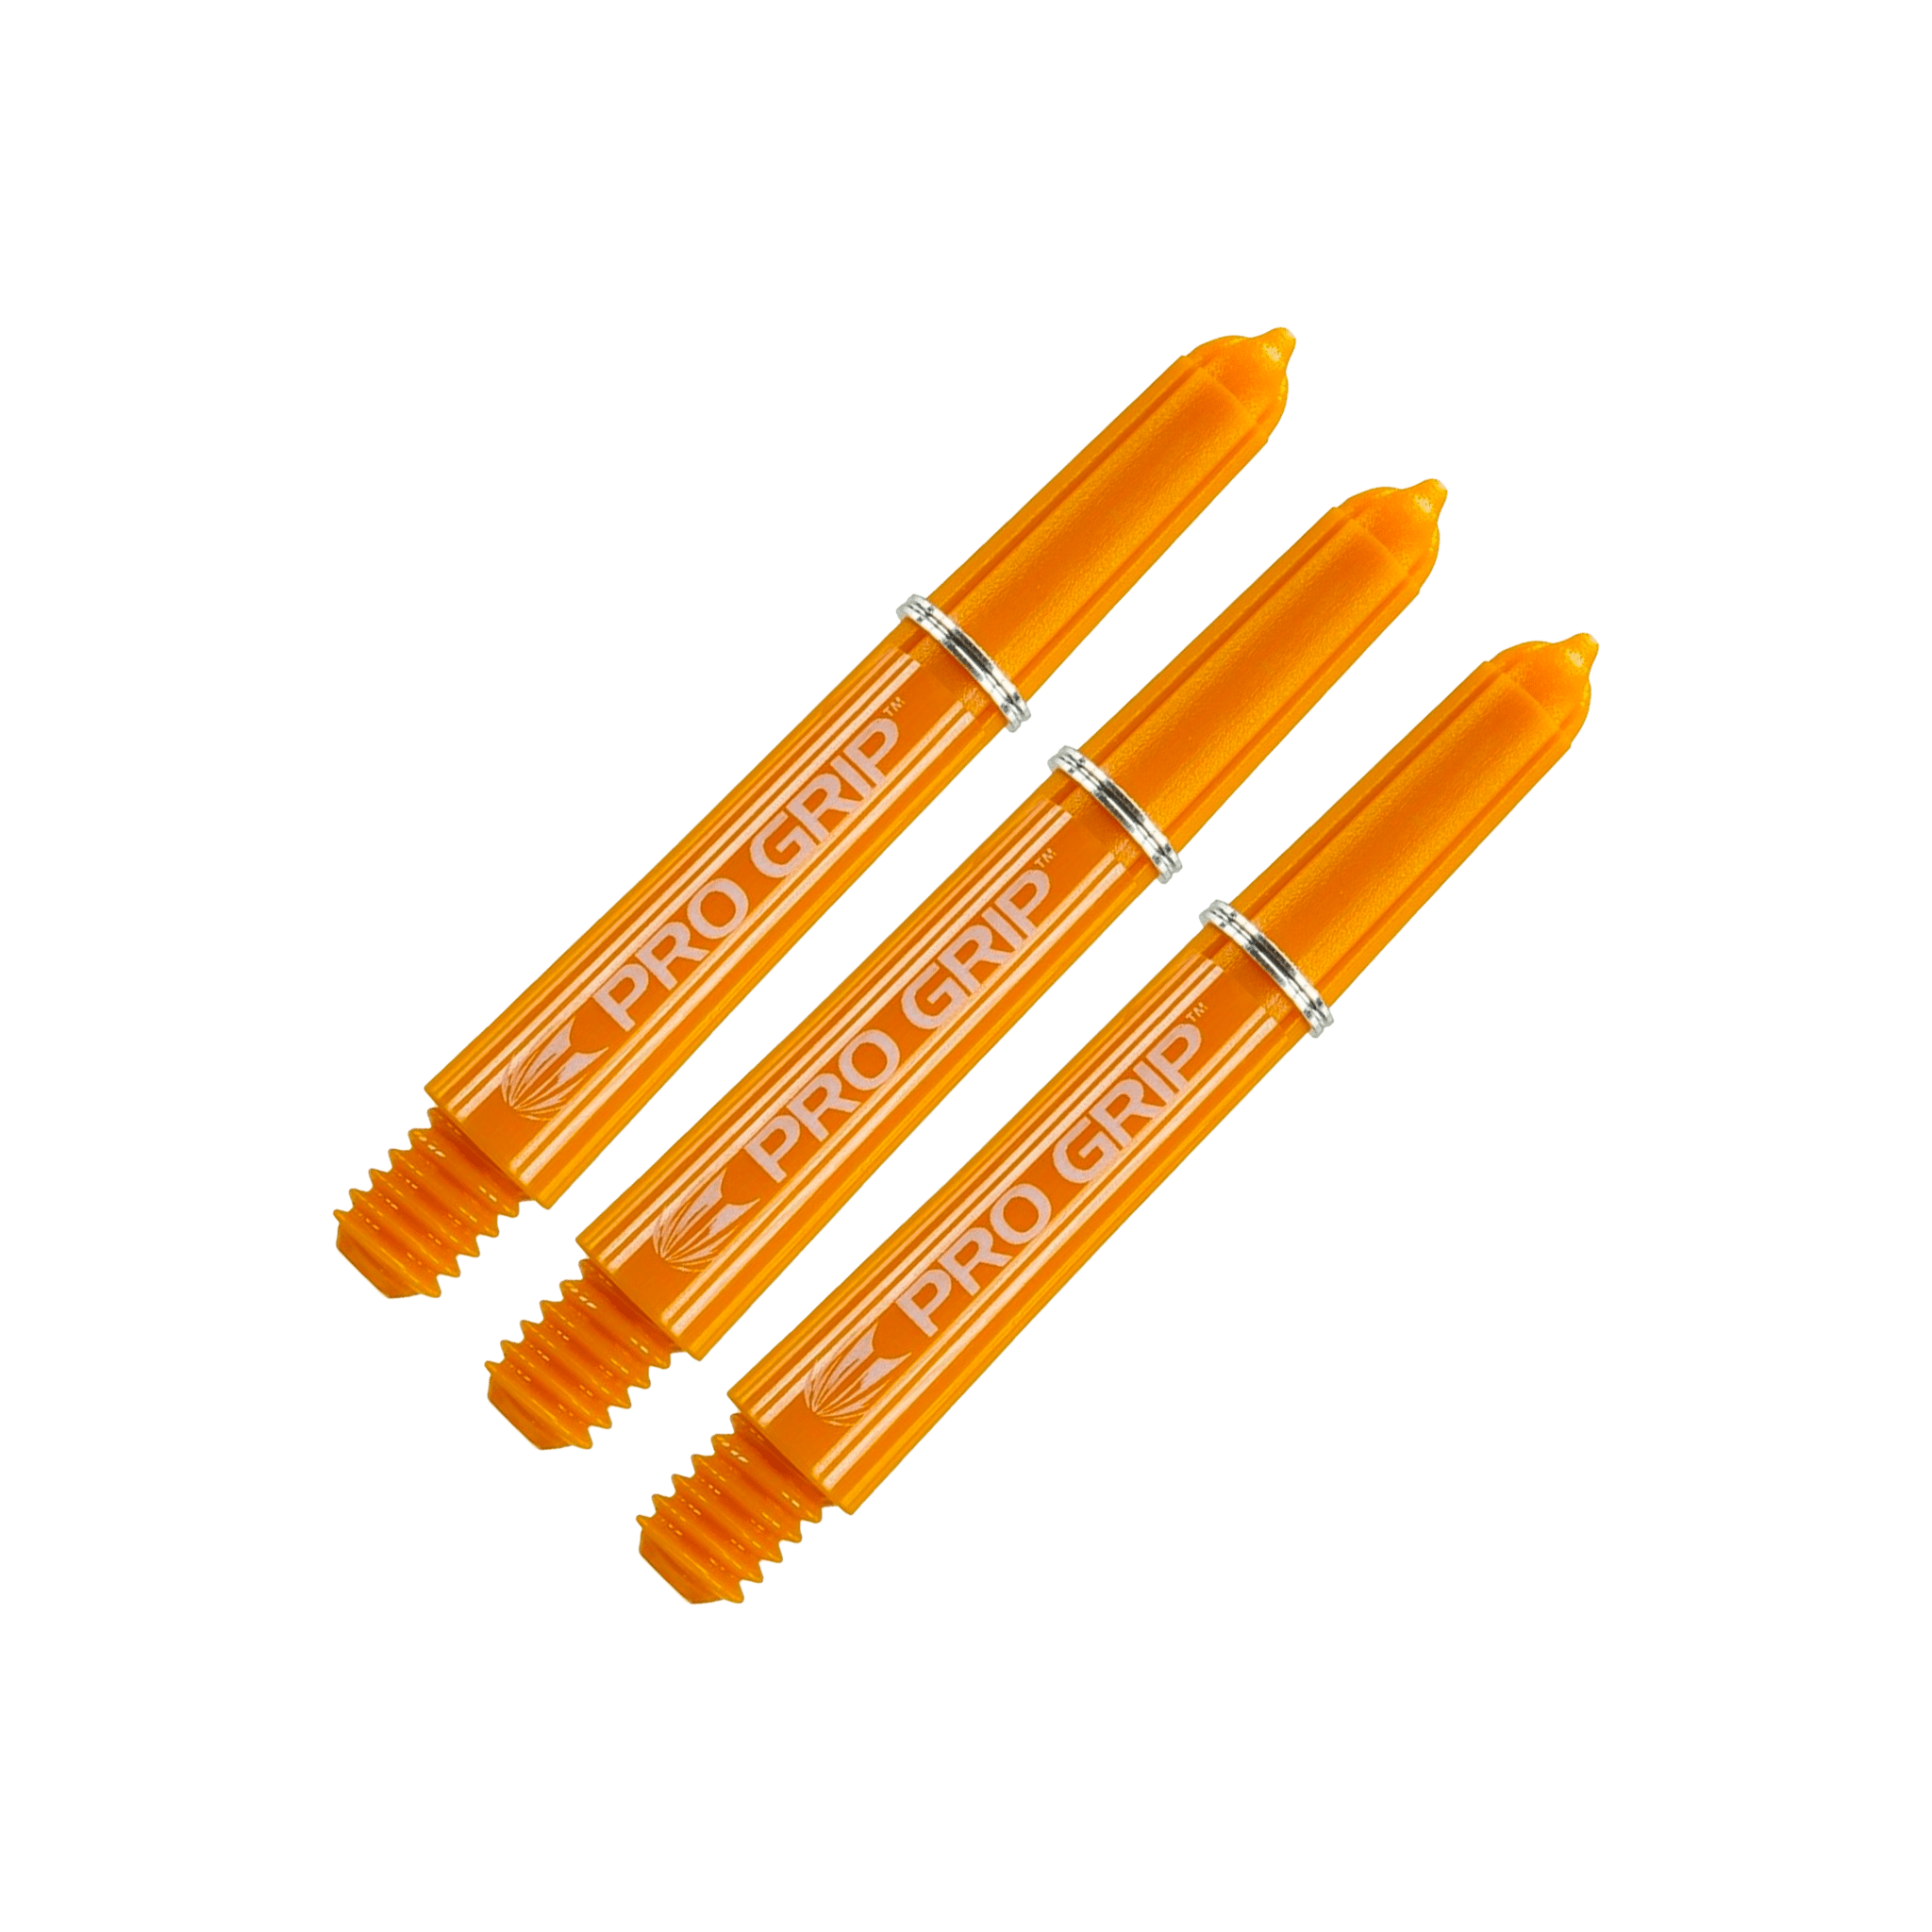 Target Pro Grip Short (34mm) Nylon Dart Shafts Orange Shafts